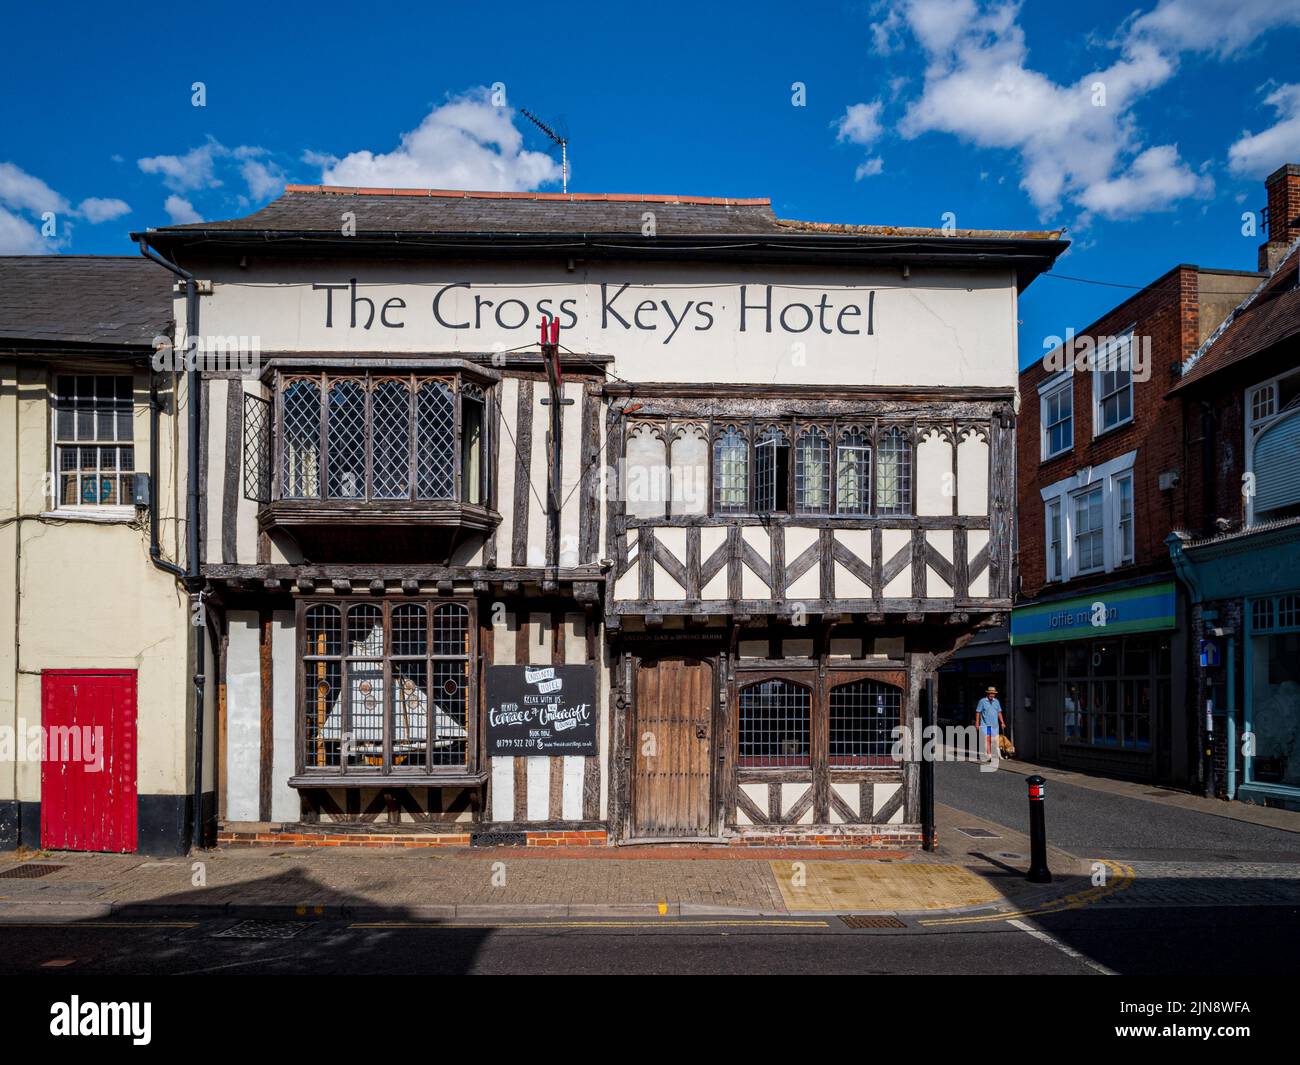 The Cross Keys Hotel Saffron Walden Essex Royaume-Uni. L'hôtel Cross Keys est une auberge de 16th chambres datant du siècle située dans le centre-ville de Saffron Walden. Banque D'Images